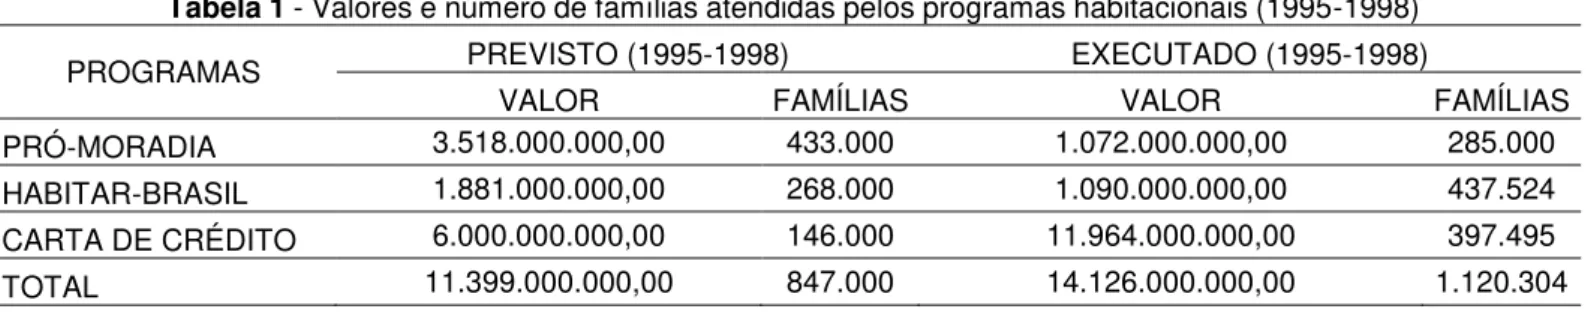 Tabela 1 - Valores e número de famílias atendidas pelos programas habitacionais (1995-1998) 